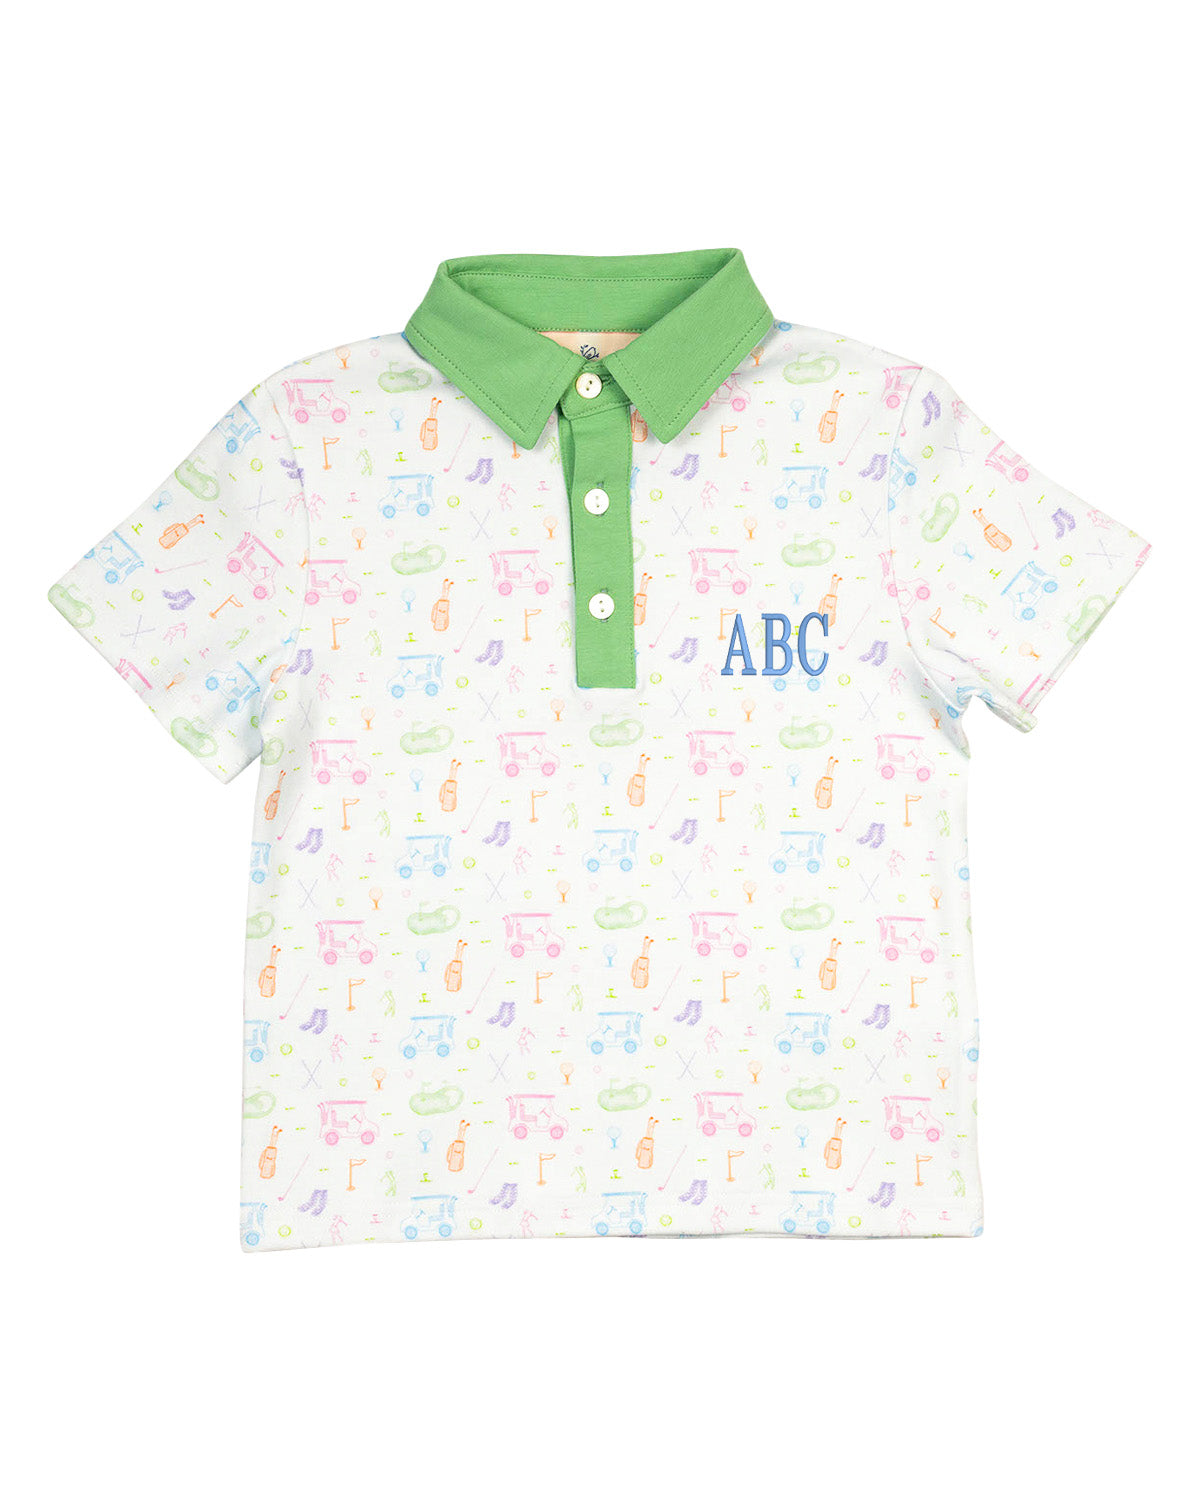 Fairway Fun Golf Print Knit Collared Shirt